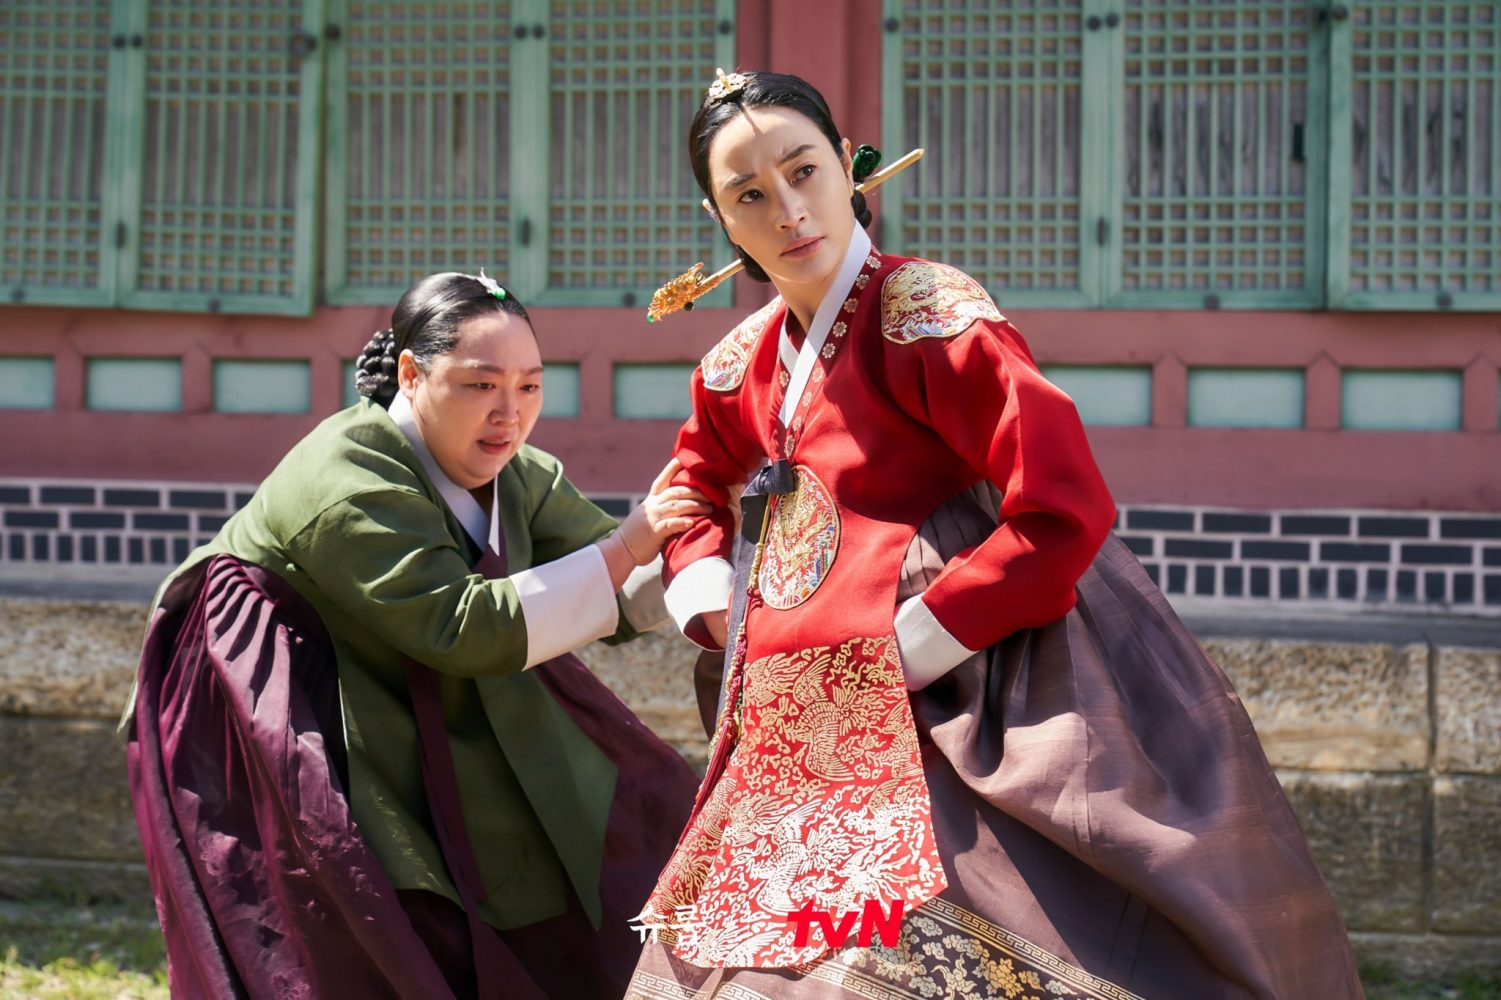 harper bazaar review phim duoi bong trung dien under the queens umbrella 8 e1666099056450 - Dưới bóng trung điện và màn lột xác của “chị đại” Kim Hye Soo